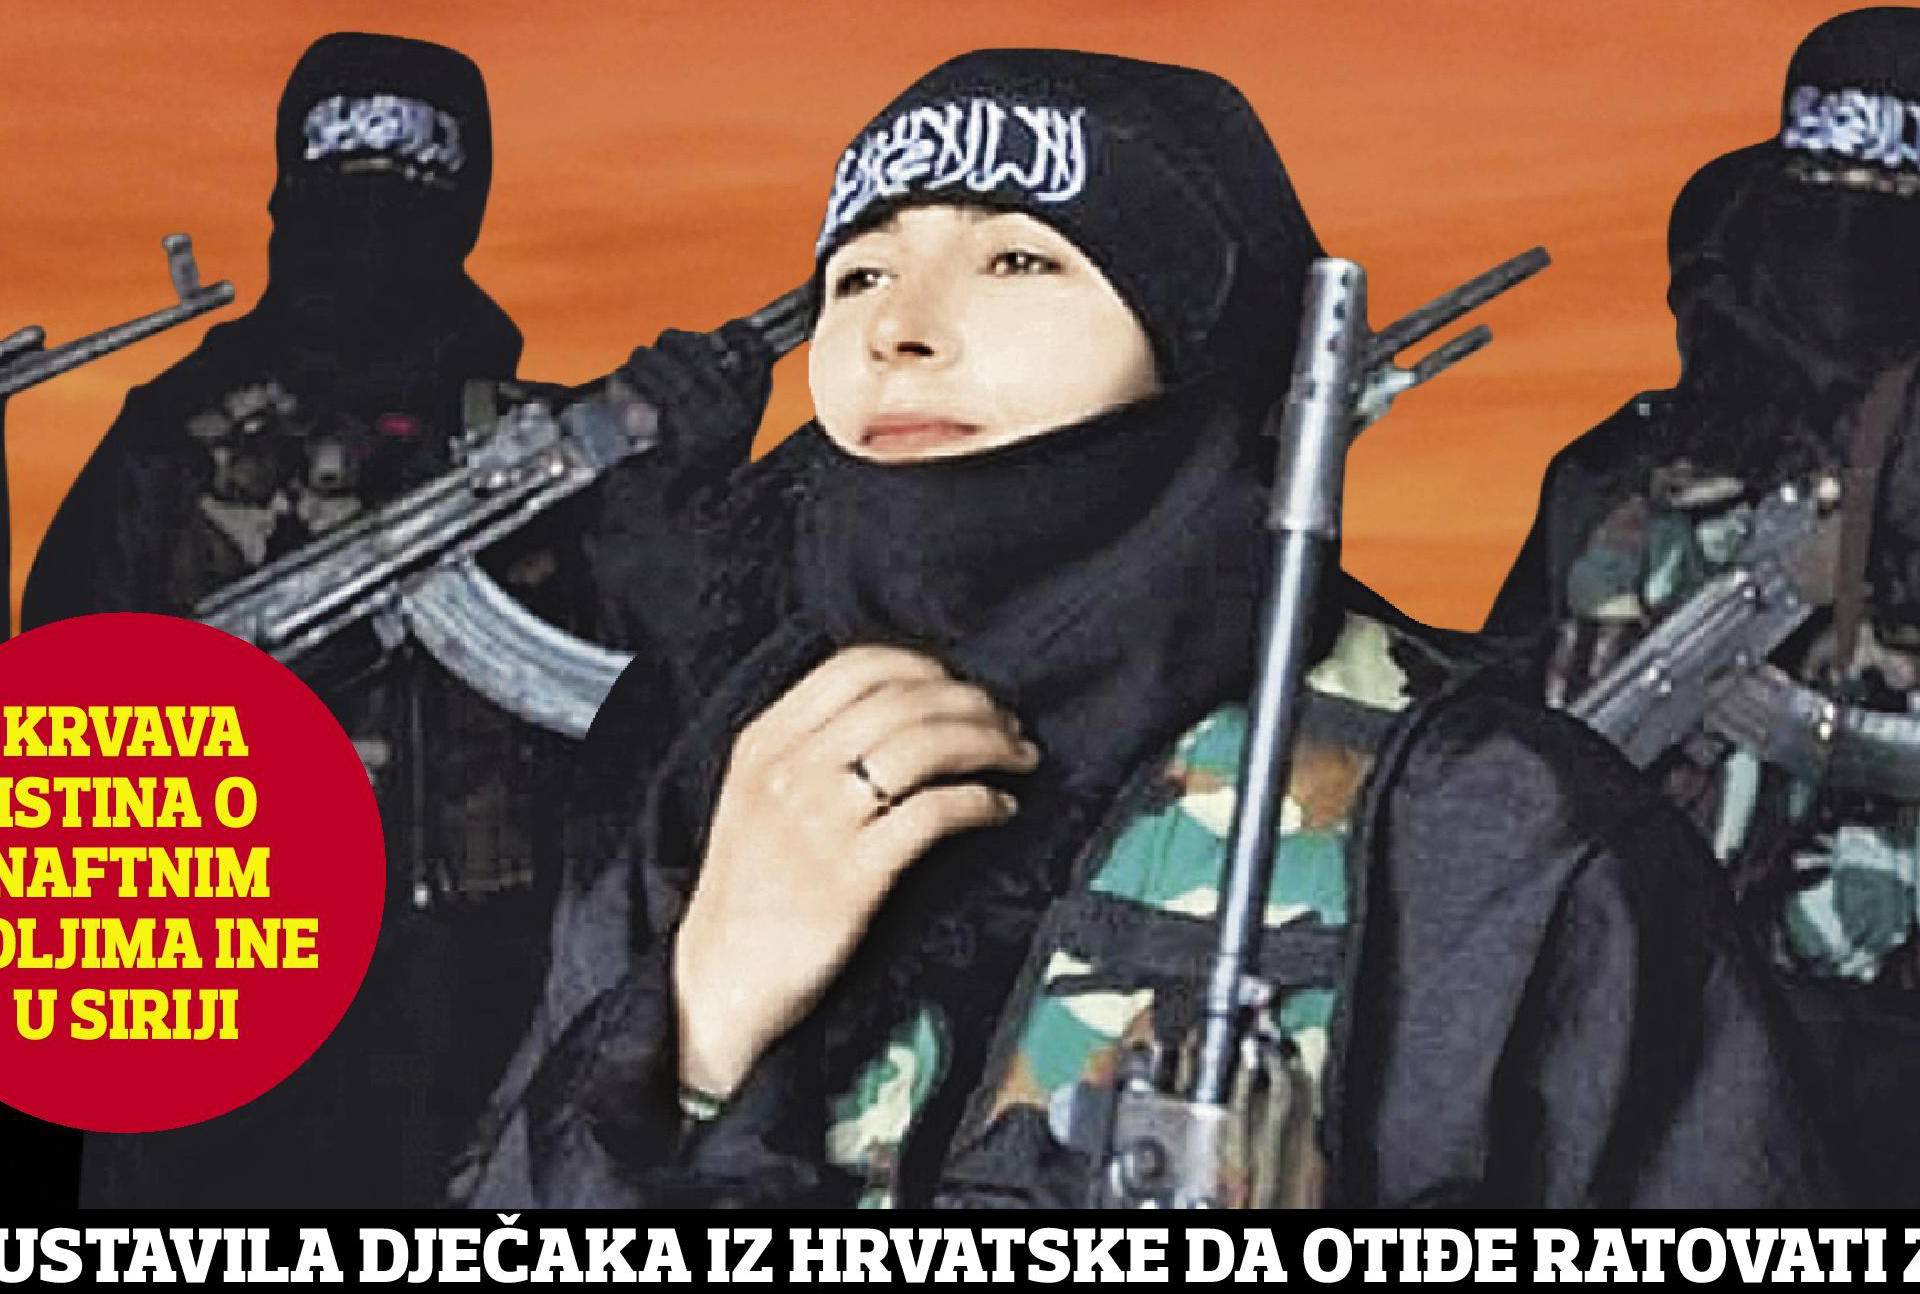 Najveća tajna! Razotkrivamo  imena Hrvata boraca ISIL-a